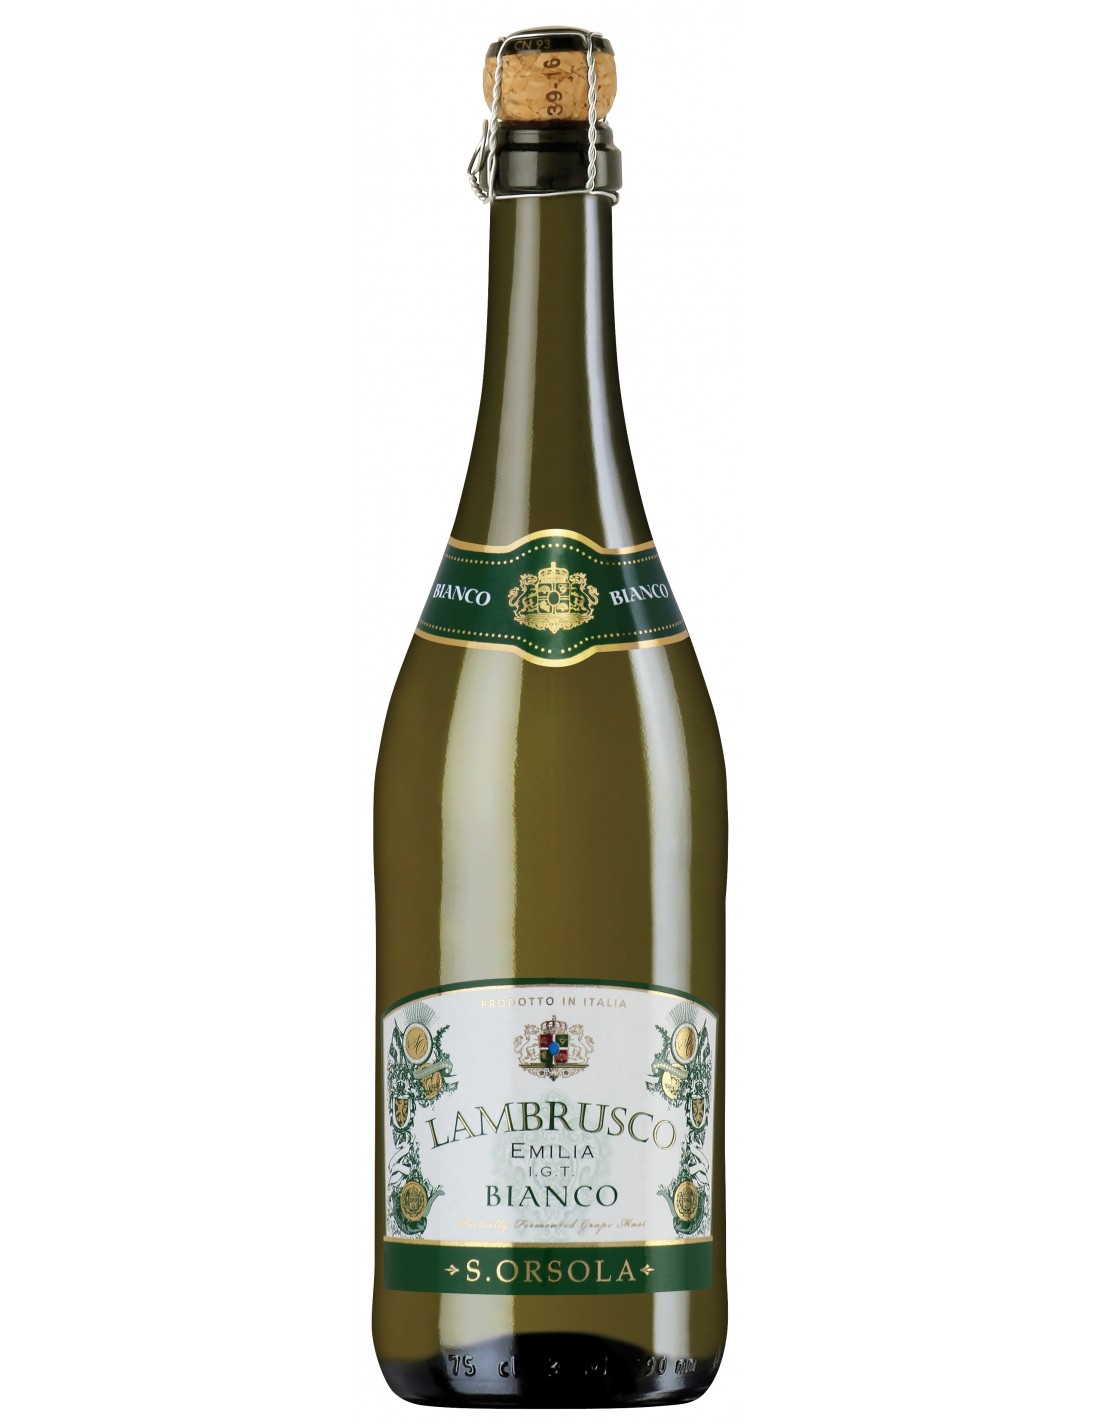 Vin alb dulce, Lambrusco, Sant’Orsola Emilia-Romagna, 0.75L, 8% alc., Italia alcooldiscount.ro